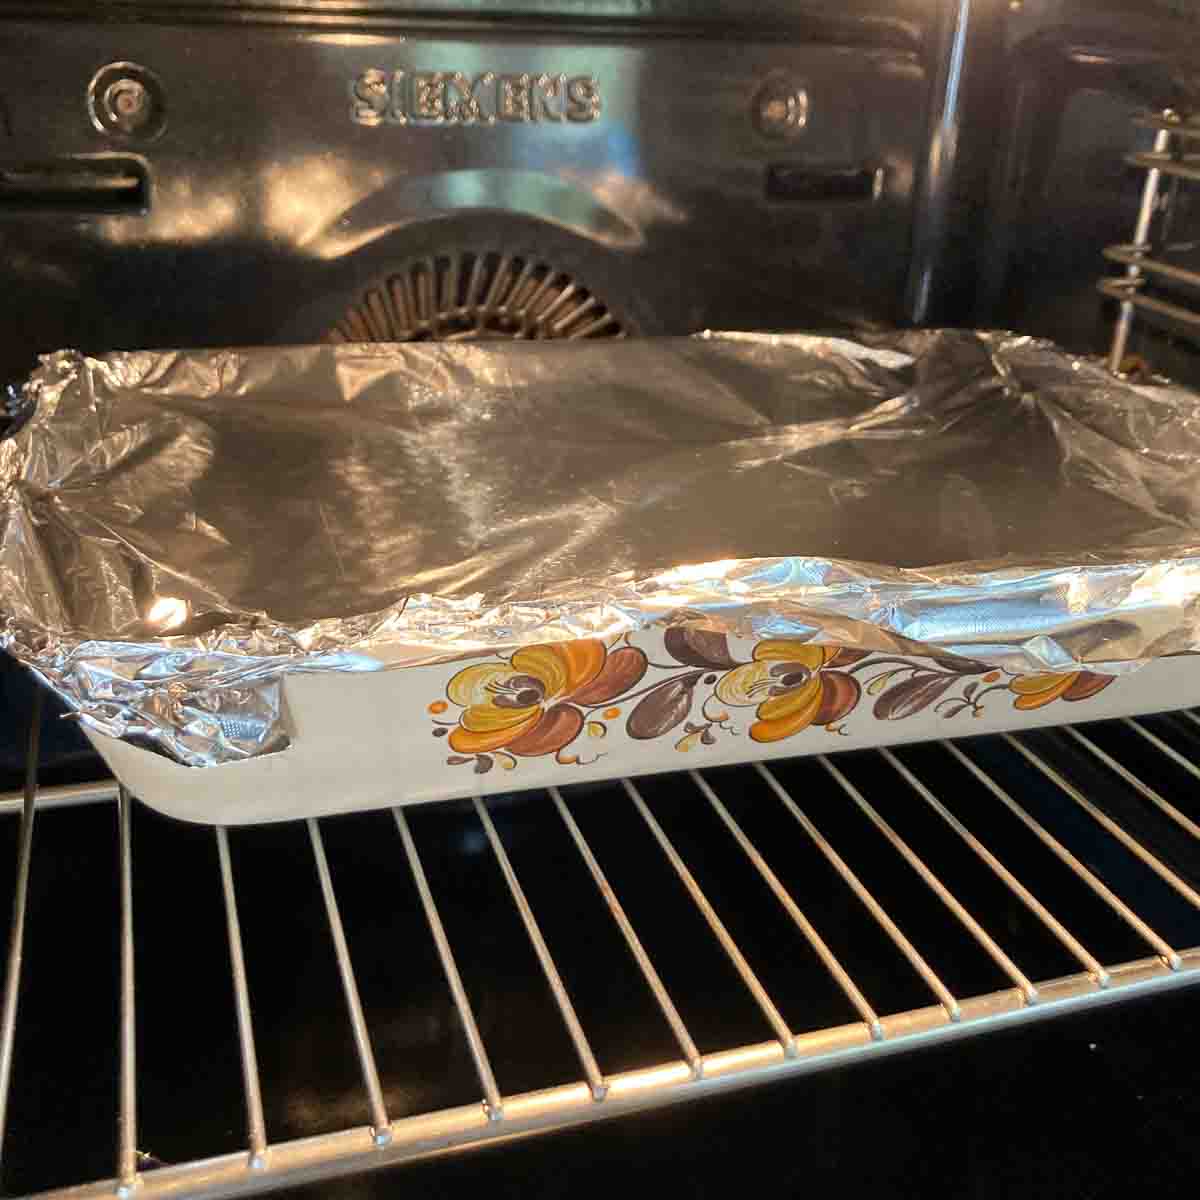 Schinkenfleckerl zugedeckt mit Aluminiumfolie im Ofen - Schinkenfleckerl covered with aluminium foil in oven.